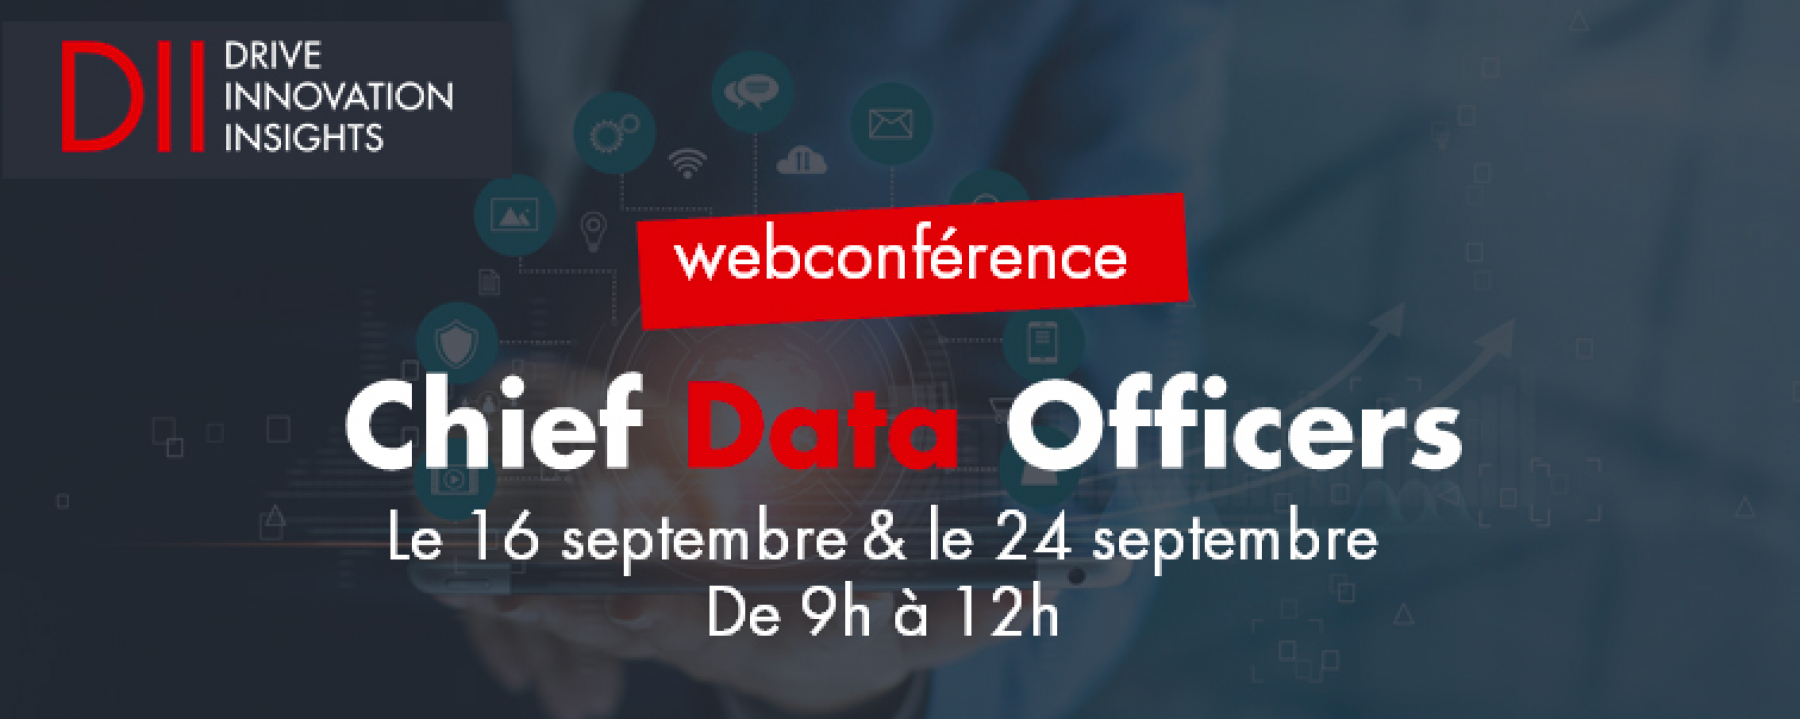 LA CONFÉRENCE DES CHIEF DATA OFFICERS, organisé par DII le 16 & 24 septembre 2020